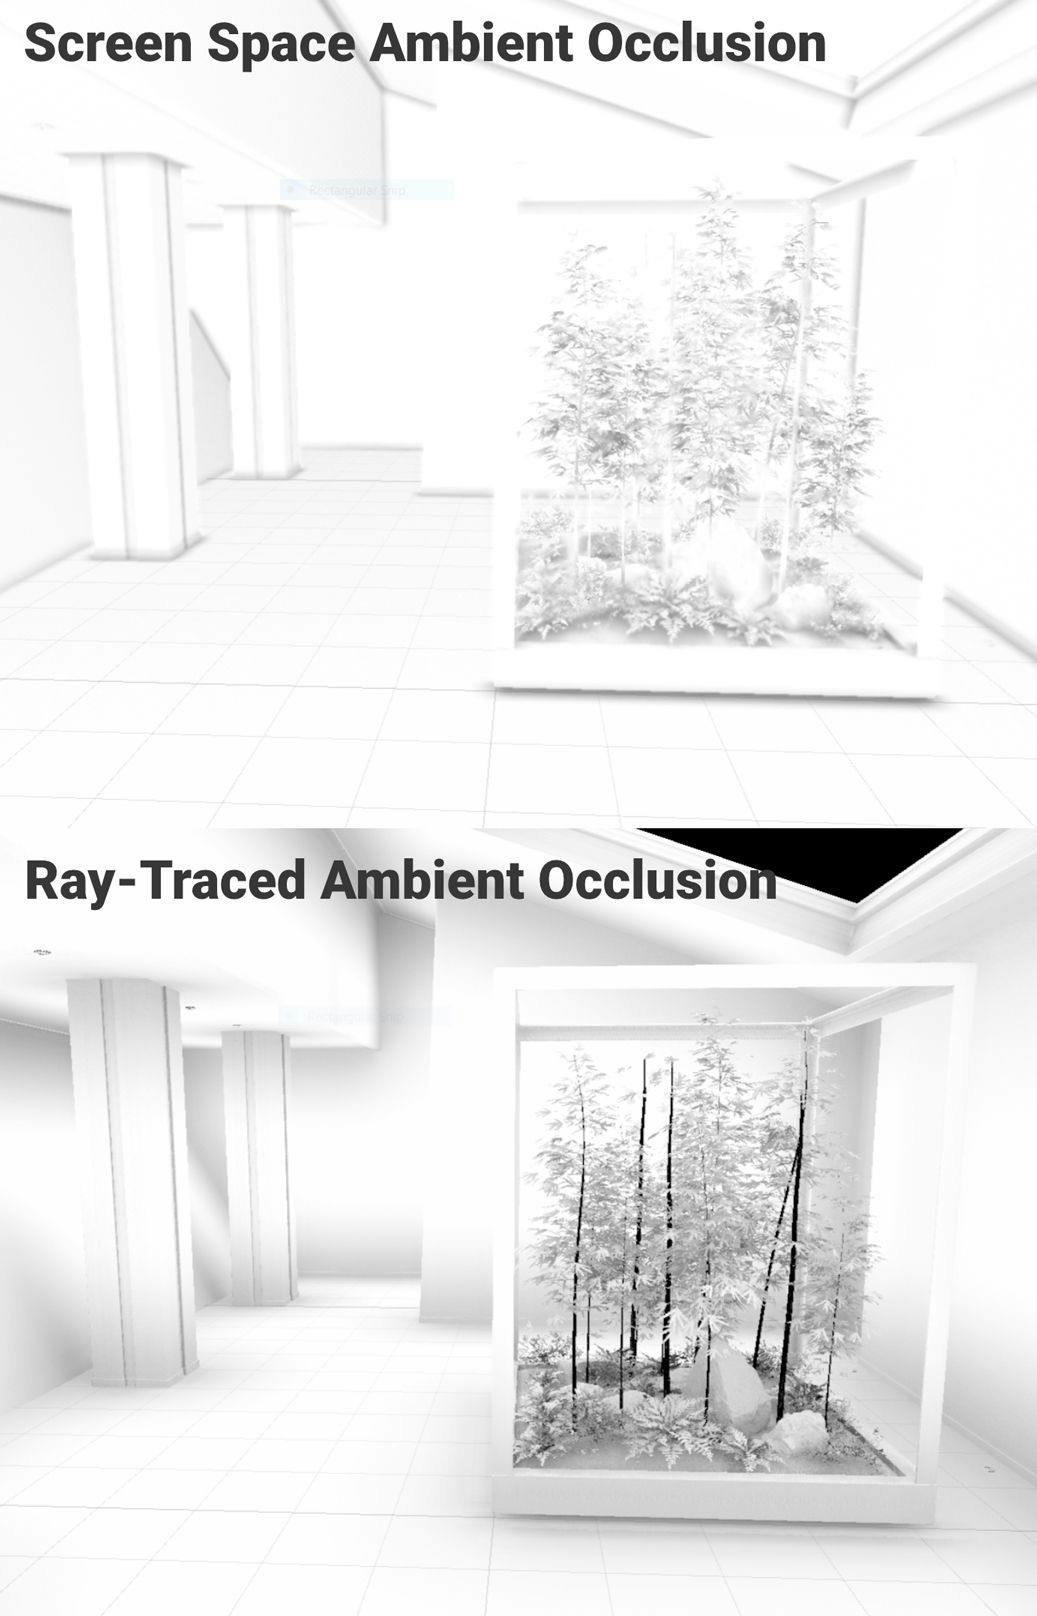 Occlusion ambiante de l'espace d'écran vs occlusion ambiante par lancer de rayons